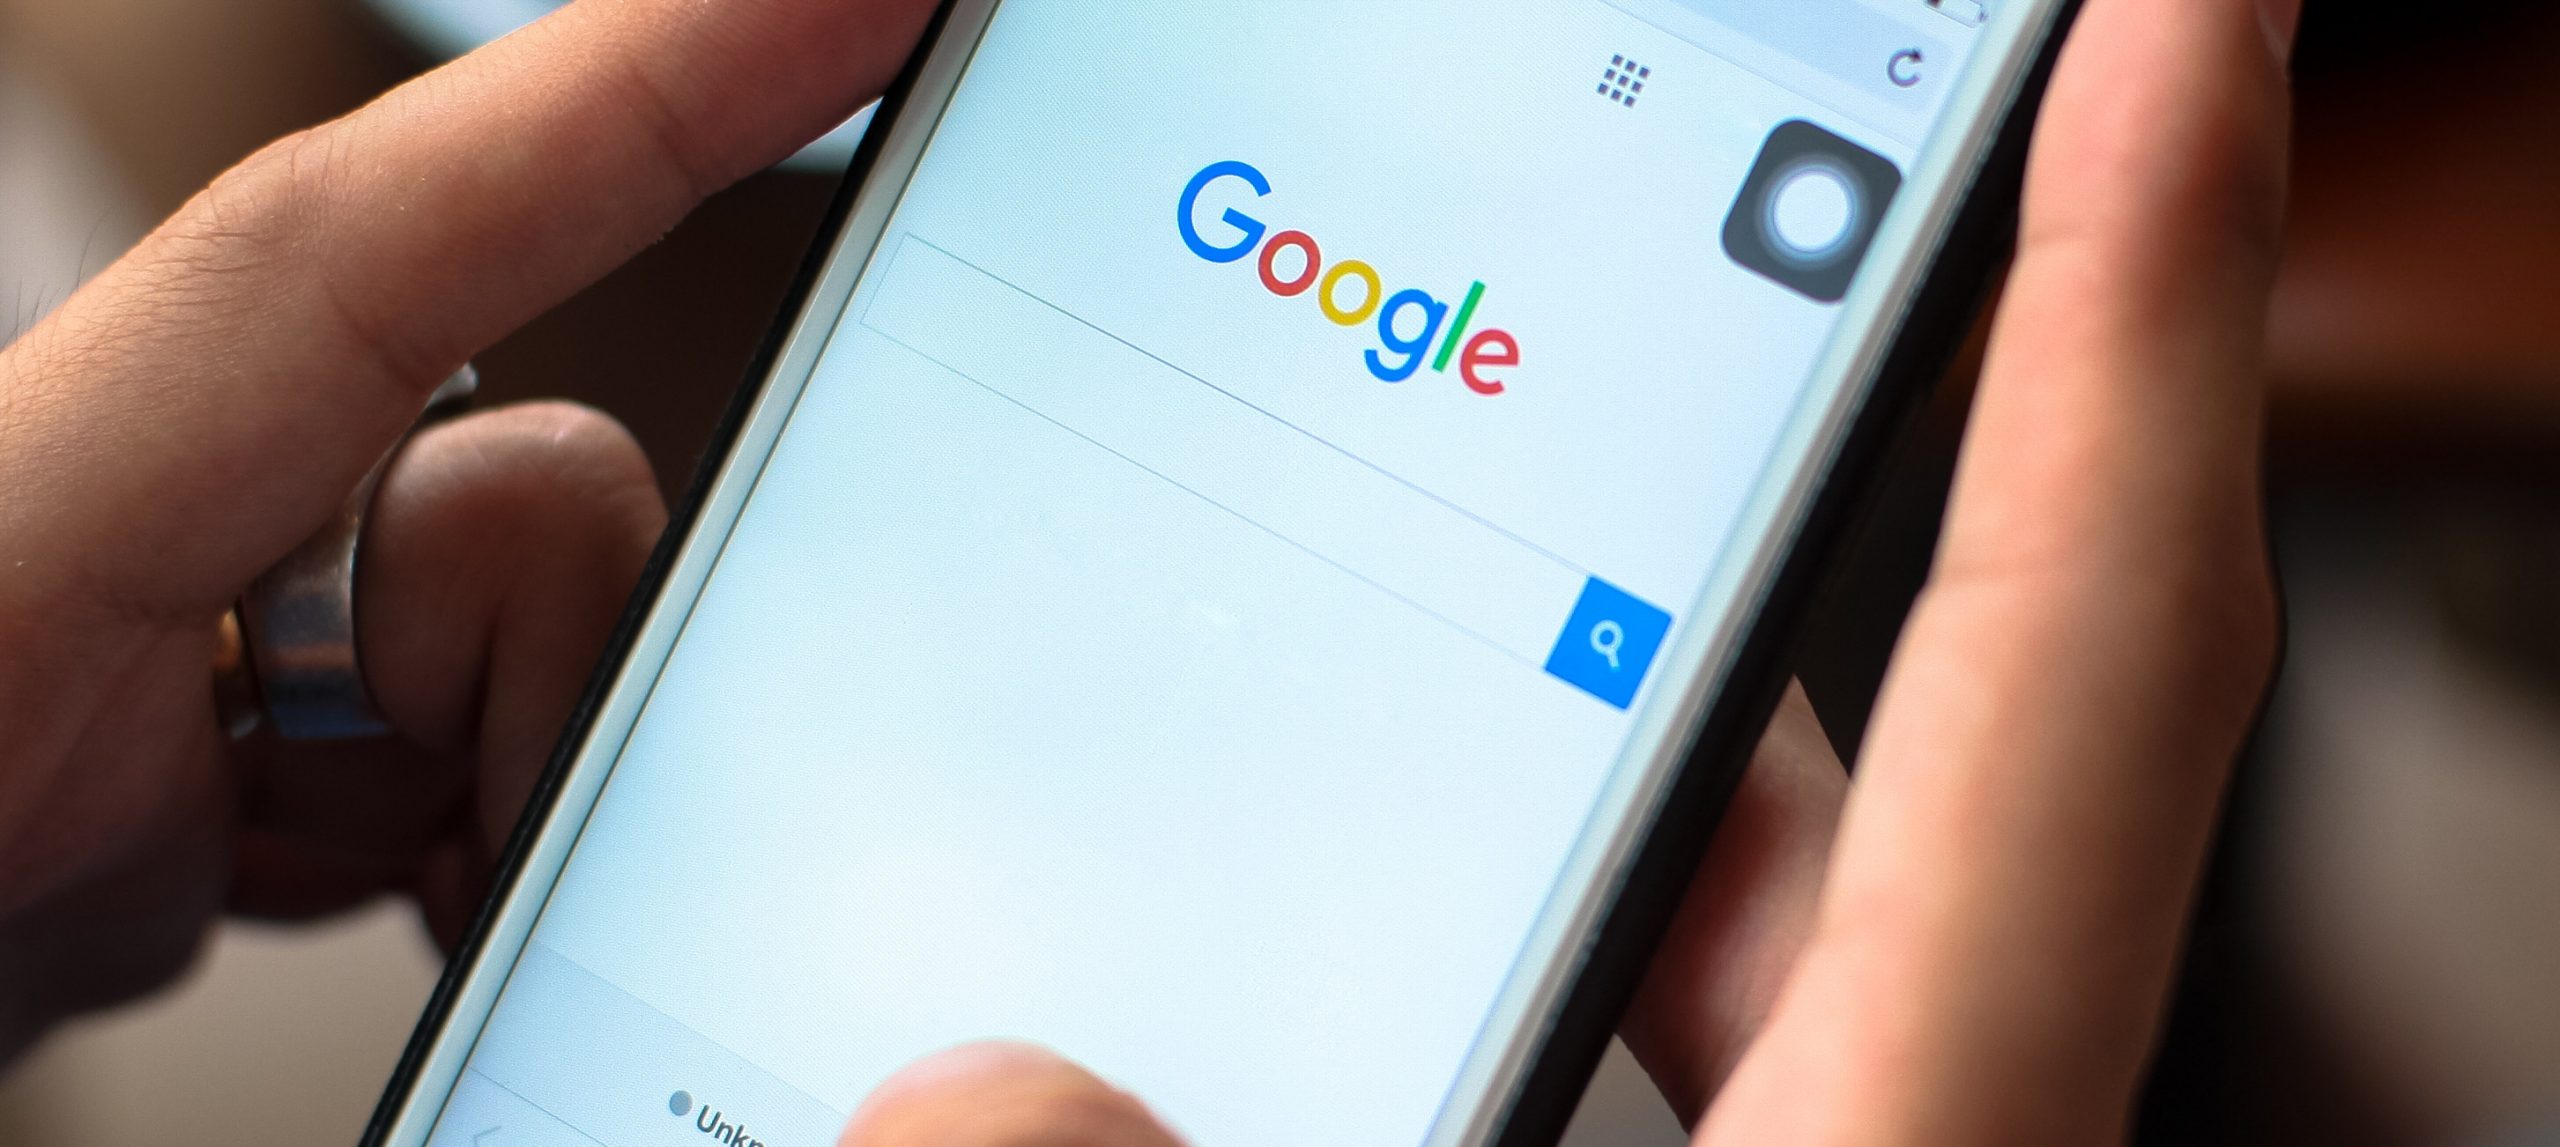 Google ka fshirë një mori aplikacionesh të cilat merrnin të dhëna personale të njerëzve